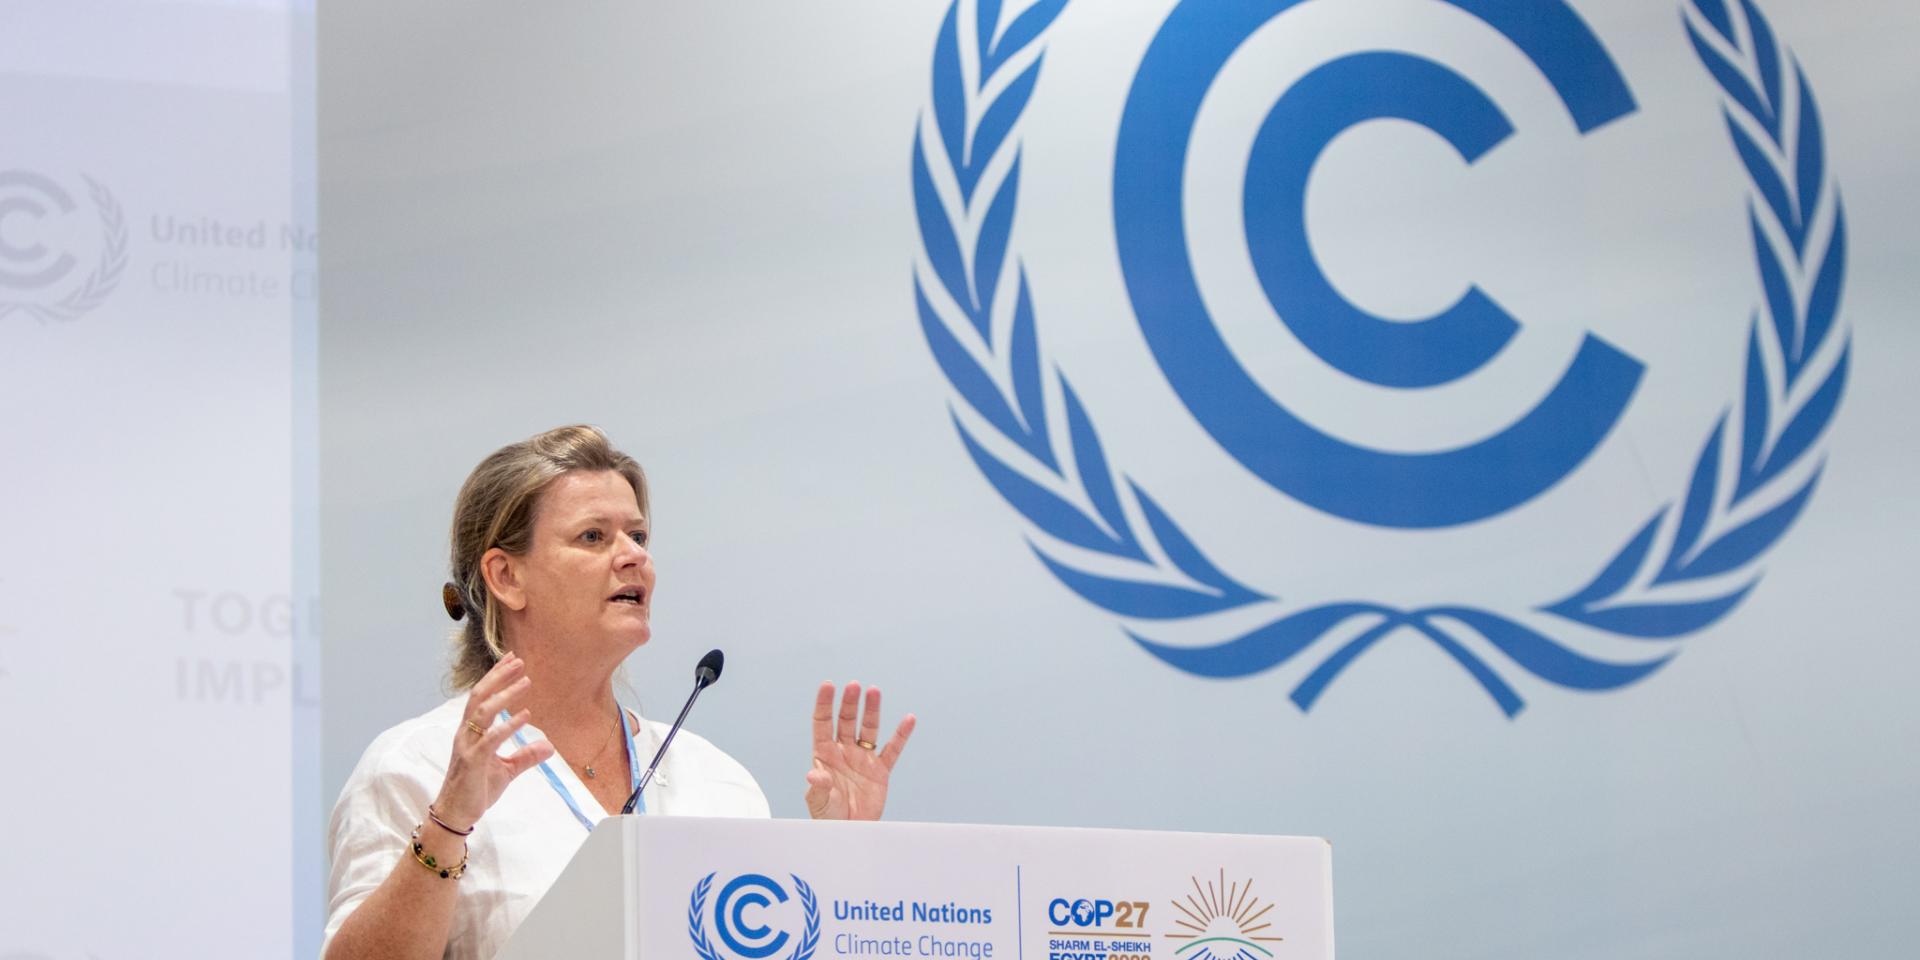 Photo of Nicoline de Haan at COP27